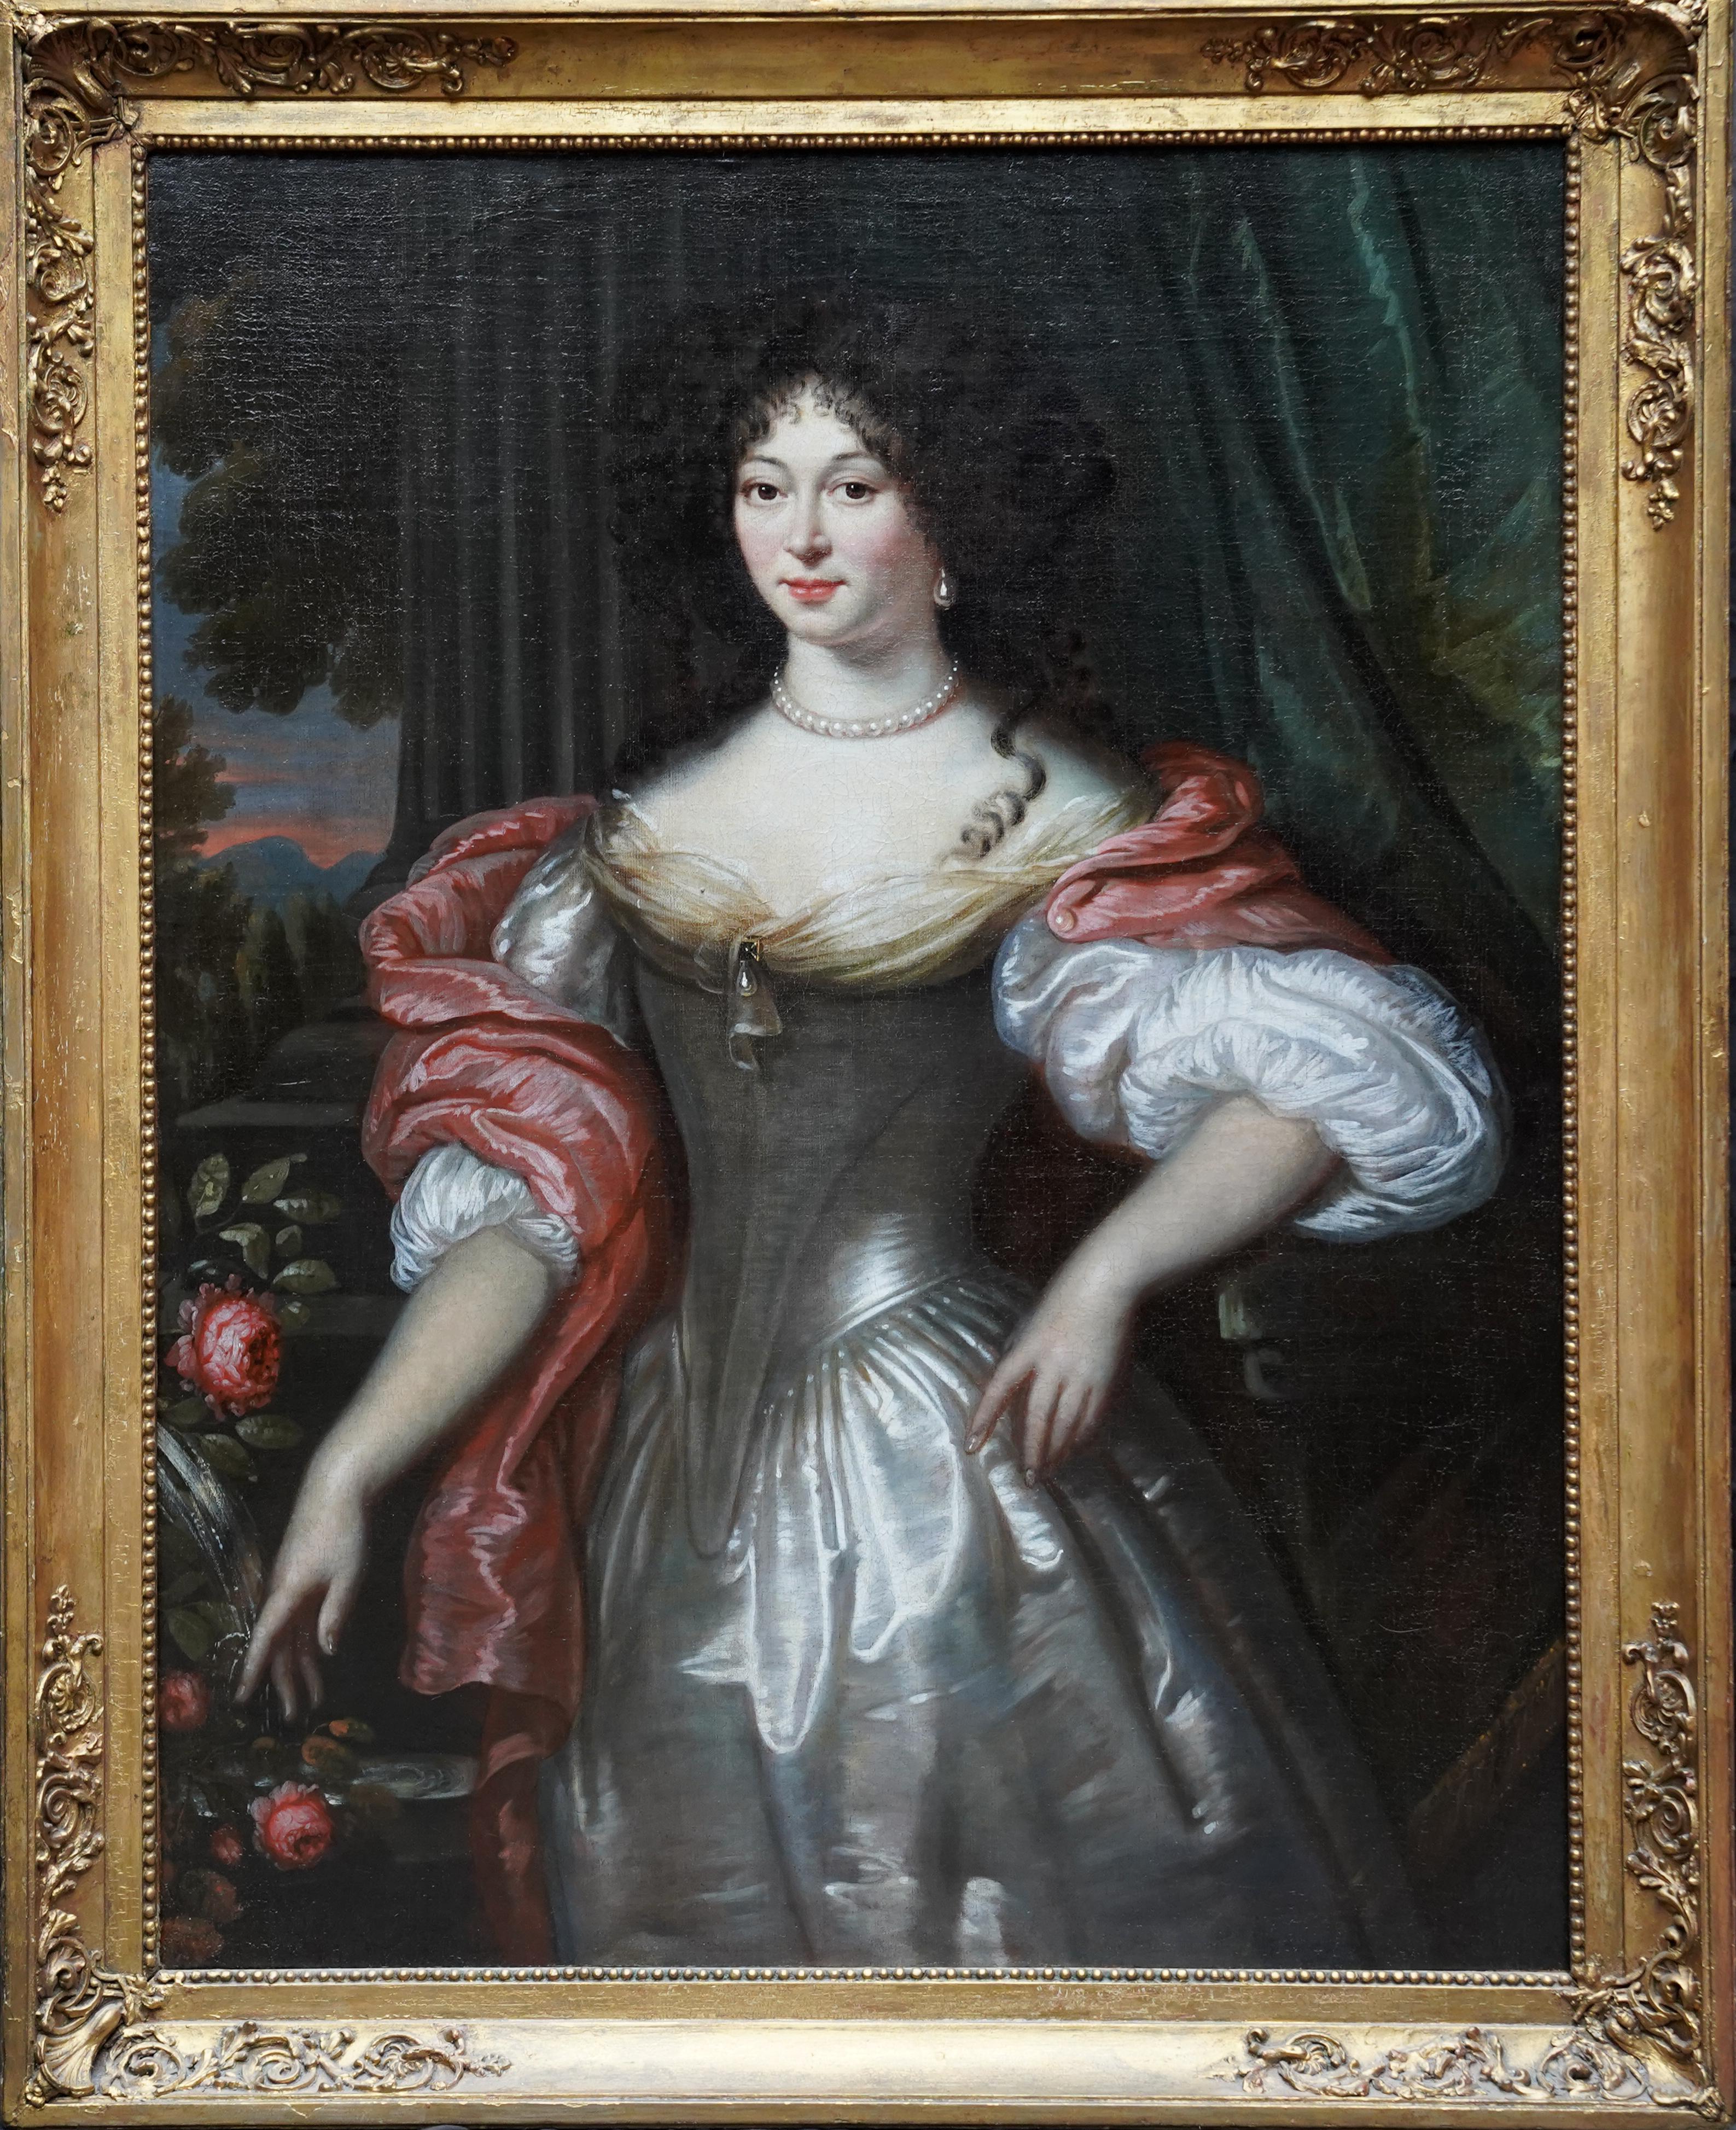 Portrait Painting Willem Wissing - Portrait de femme en robe argentée - peinture à l'huile de portrait de maîtres anciens hollandais